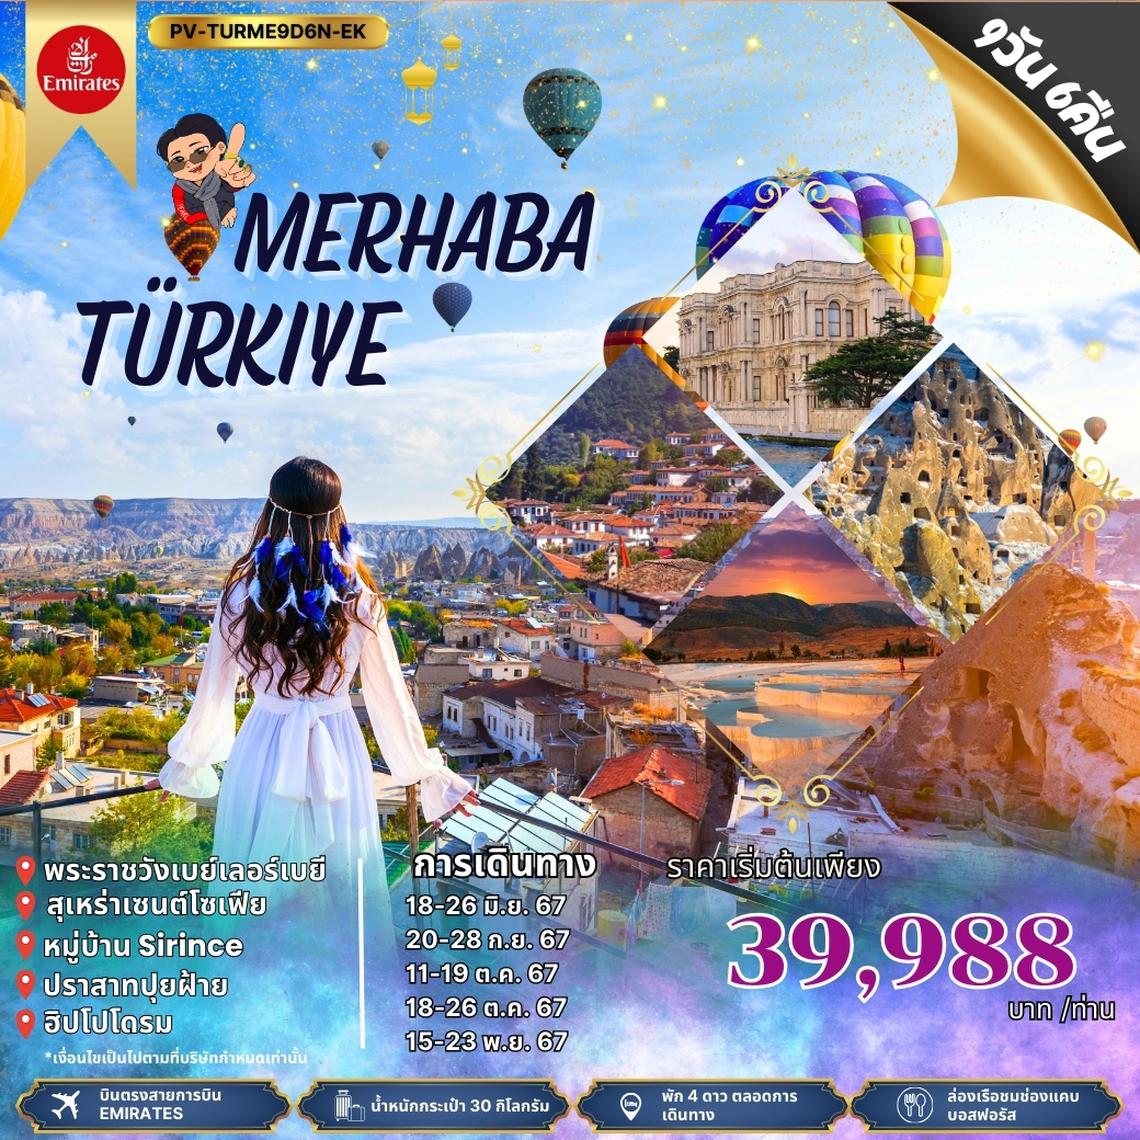 MERHABA TURKIYE 9D6N BY EK (PV-TURME9D6N-EK)